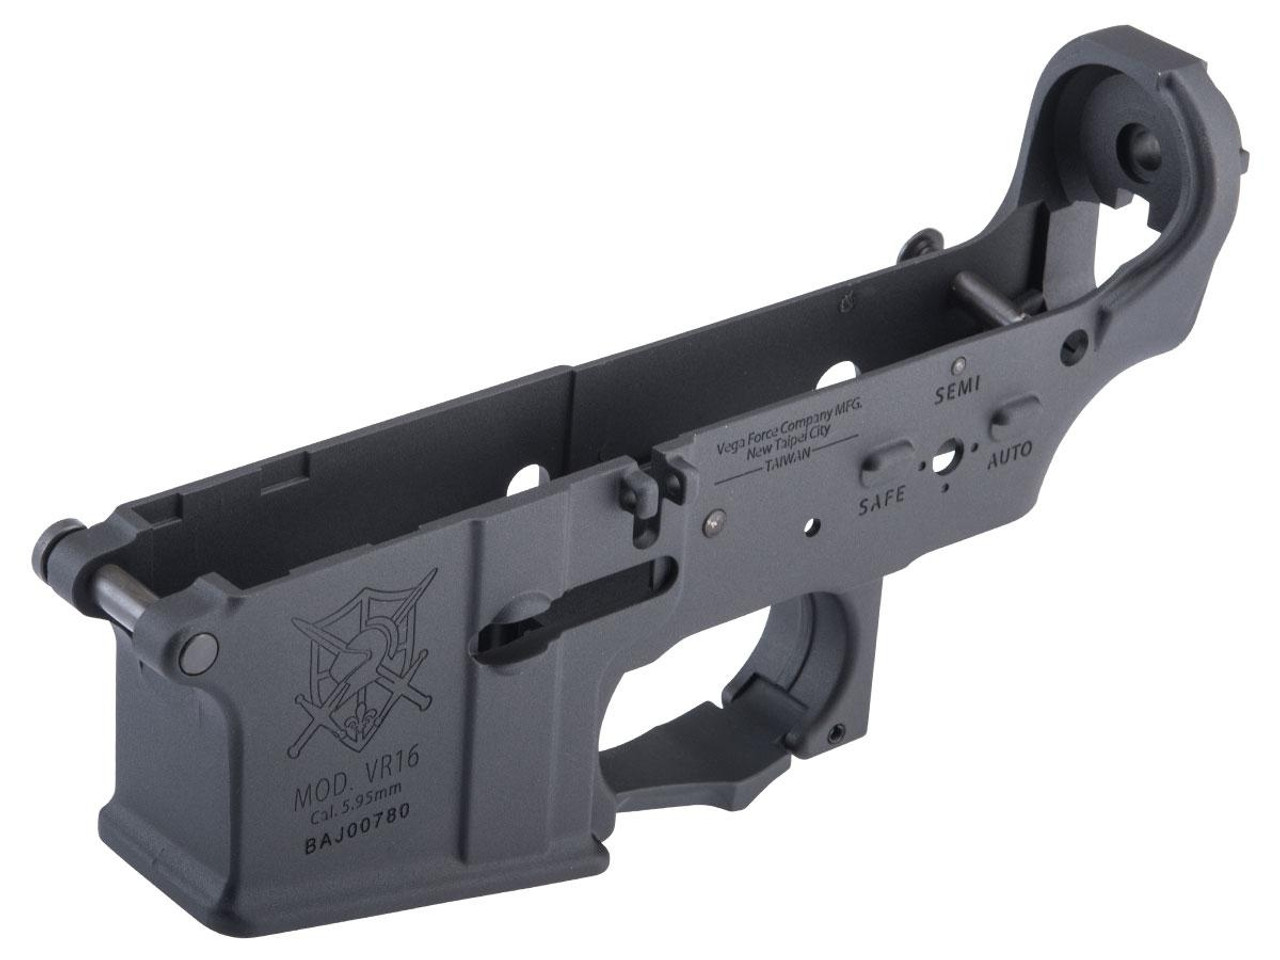 VFC VR16 Lower Receiver for M4 Series AEG Rifles 